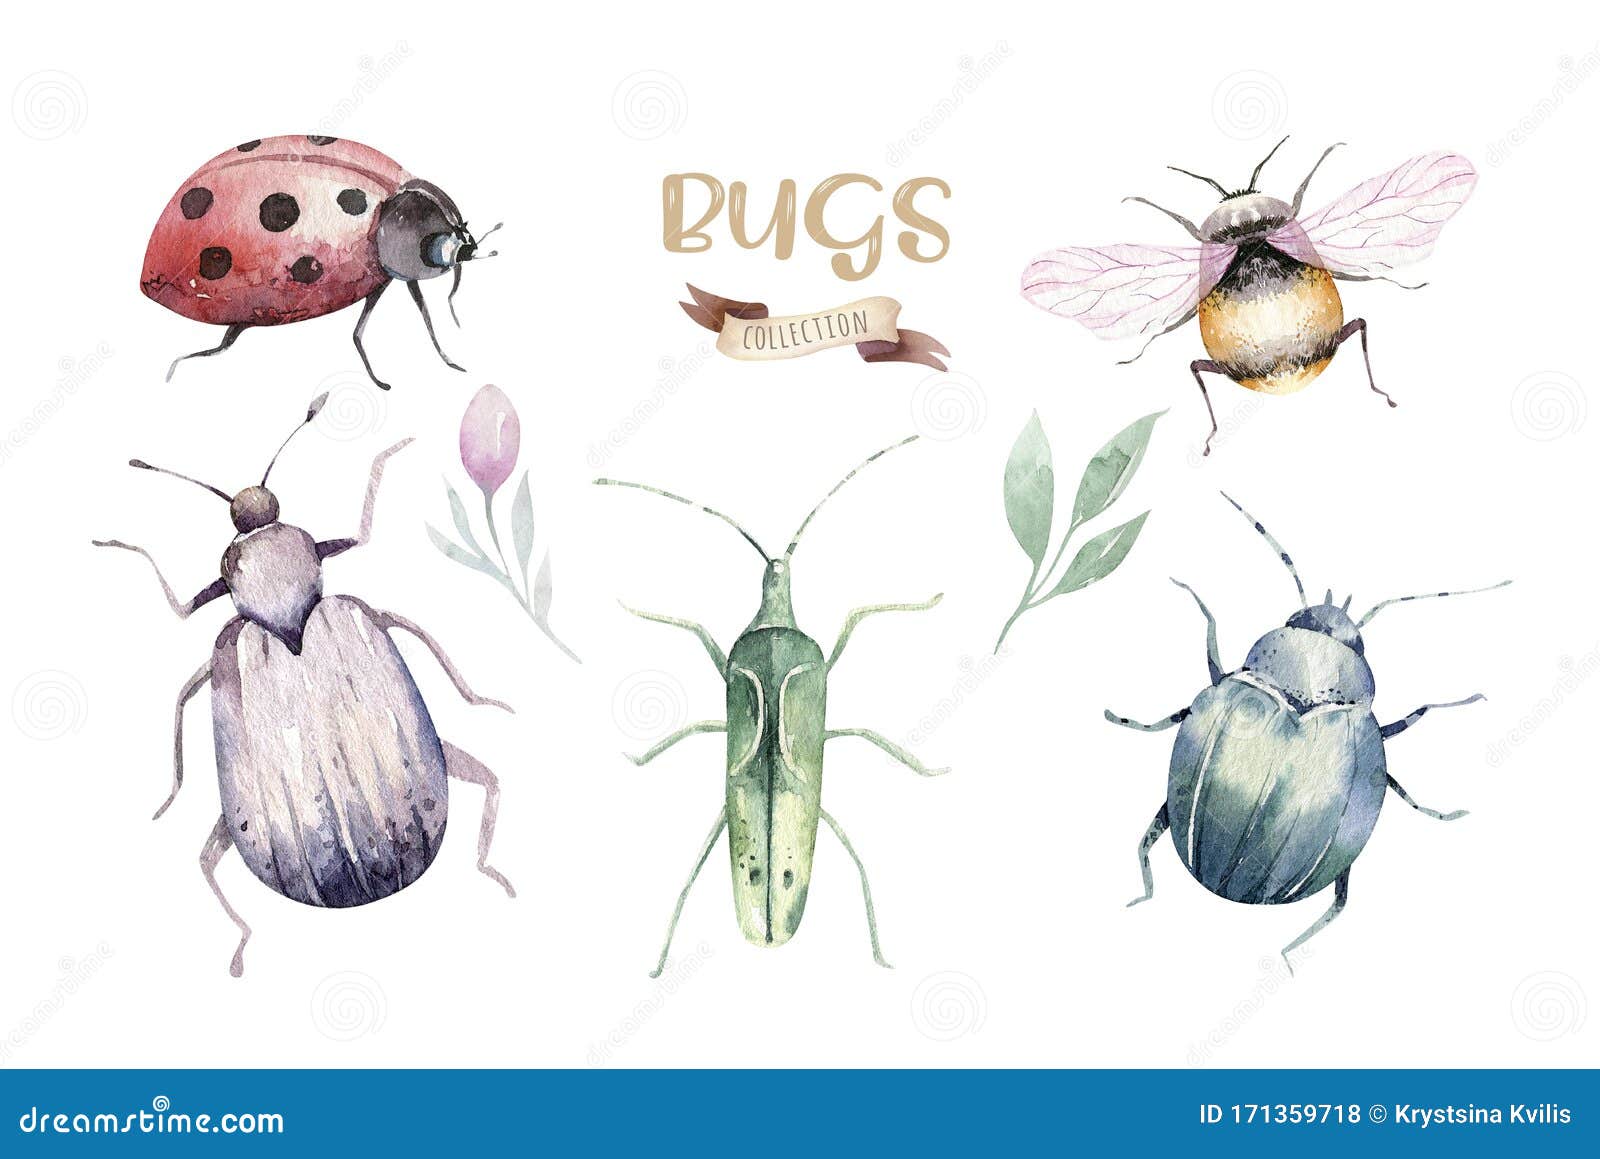 一组水彩亮甲虫 虫蝇和蜜蜂彩色卡通与虫昆虫装饰库存照片 图片包括有一组水彩亮甲虫 虫蝇和蜜蜂